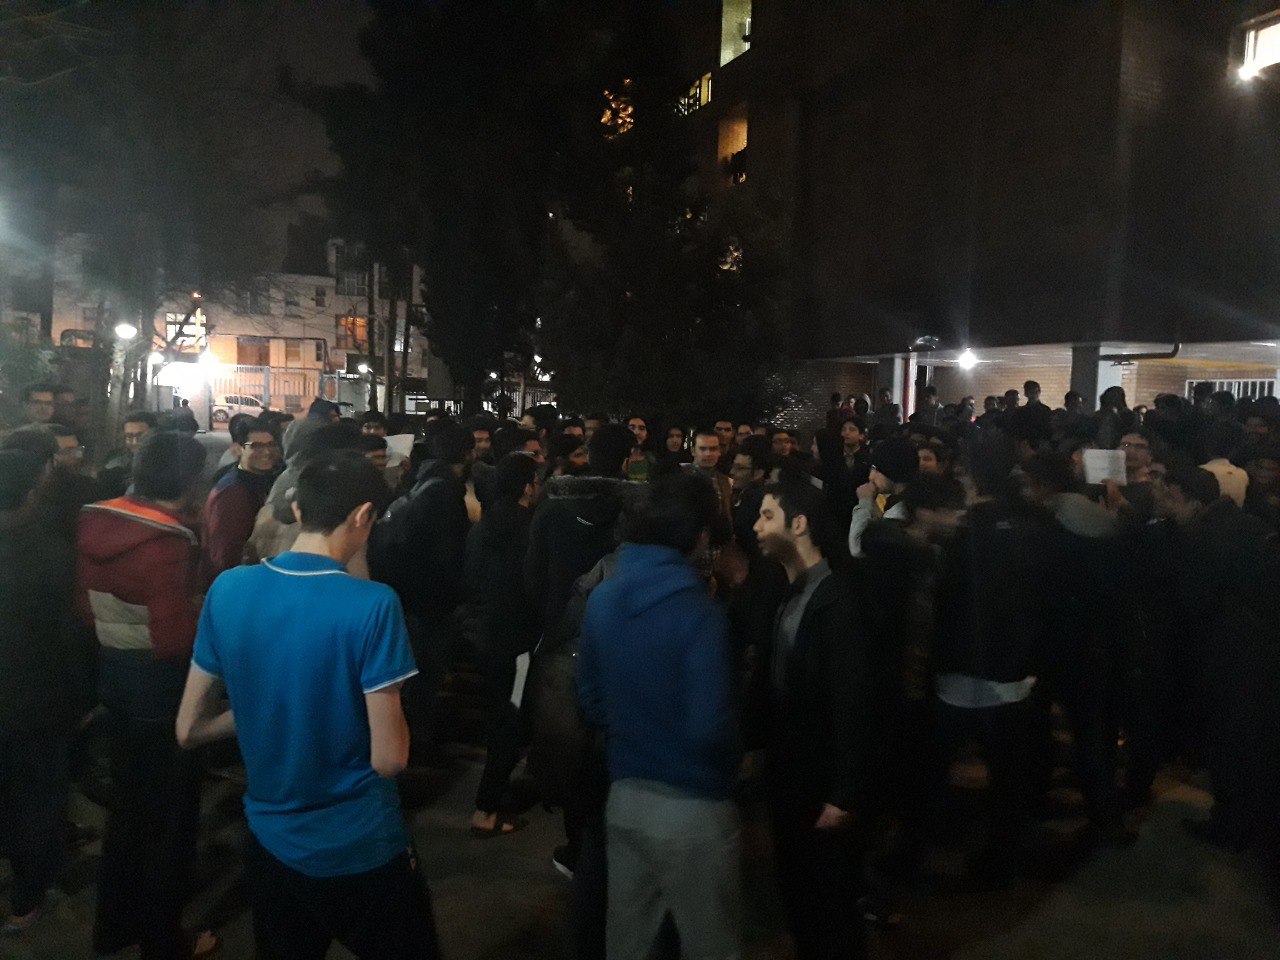 دانشجویان خوابگاههای دانشگاه شریف تجمع کردند/ هیچ مسئولی پاسخگو نیست!